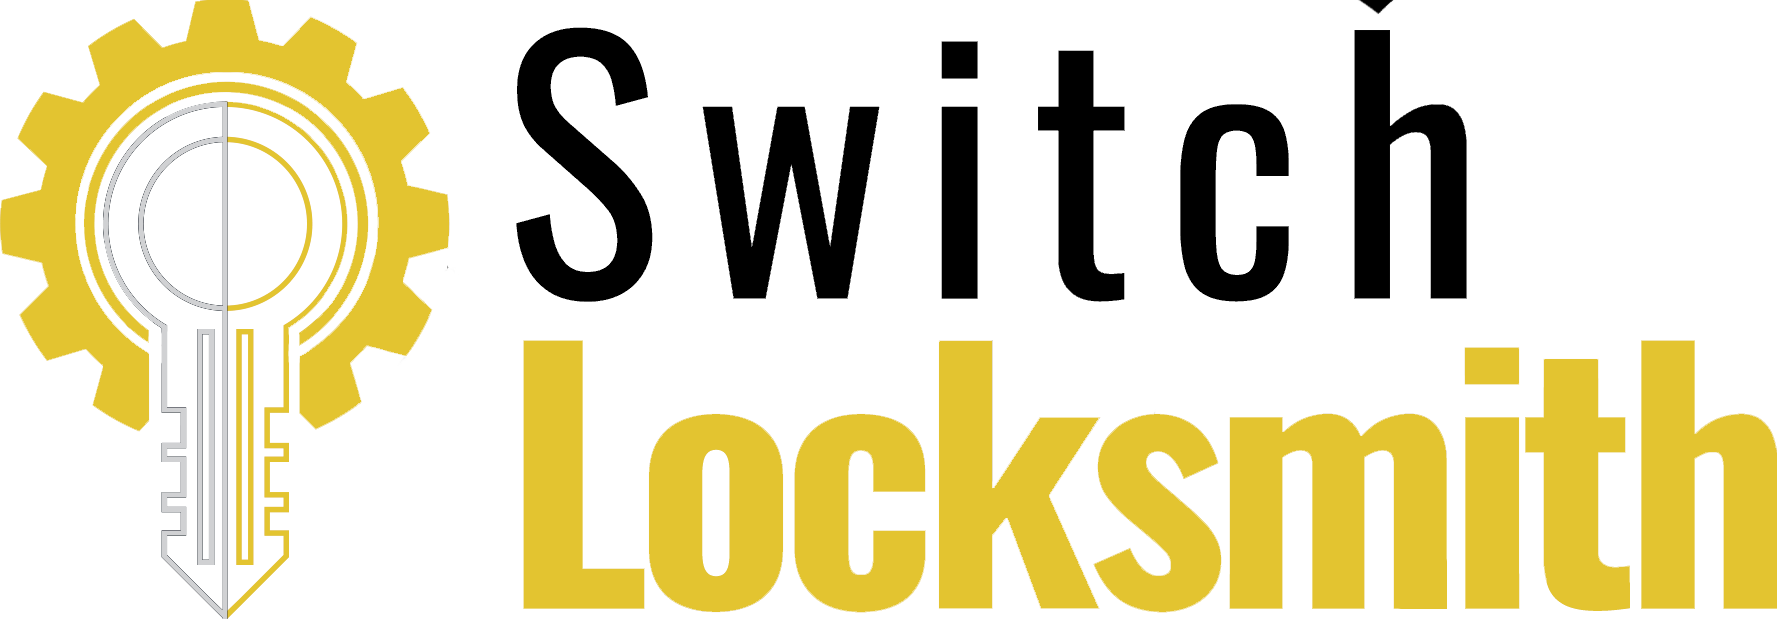 Switch Locksmith